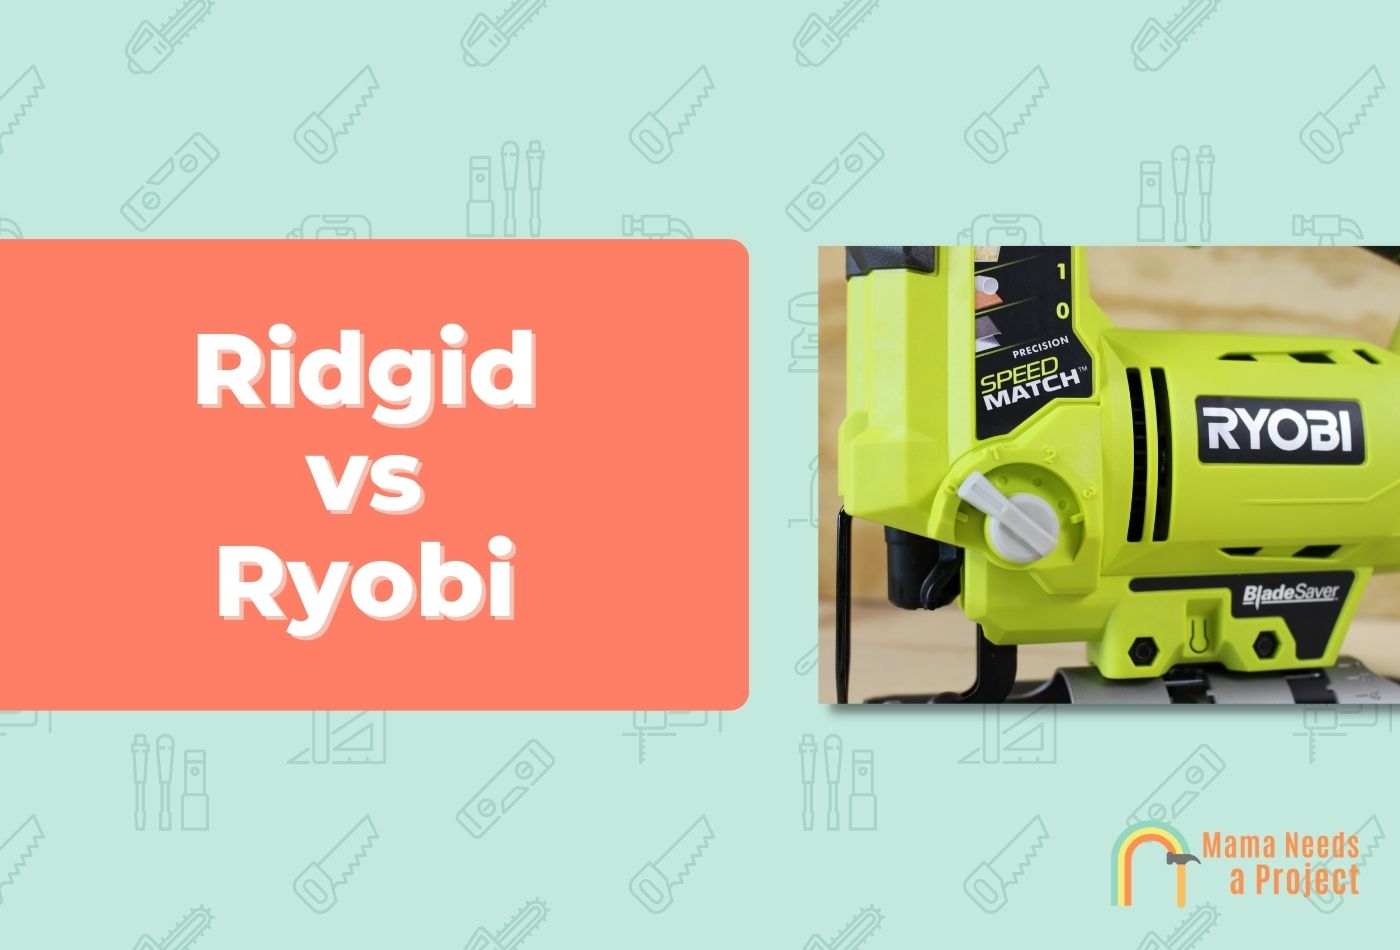 Ridgid vs Ryobi